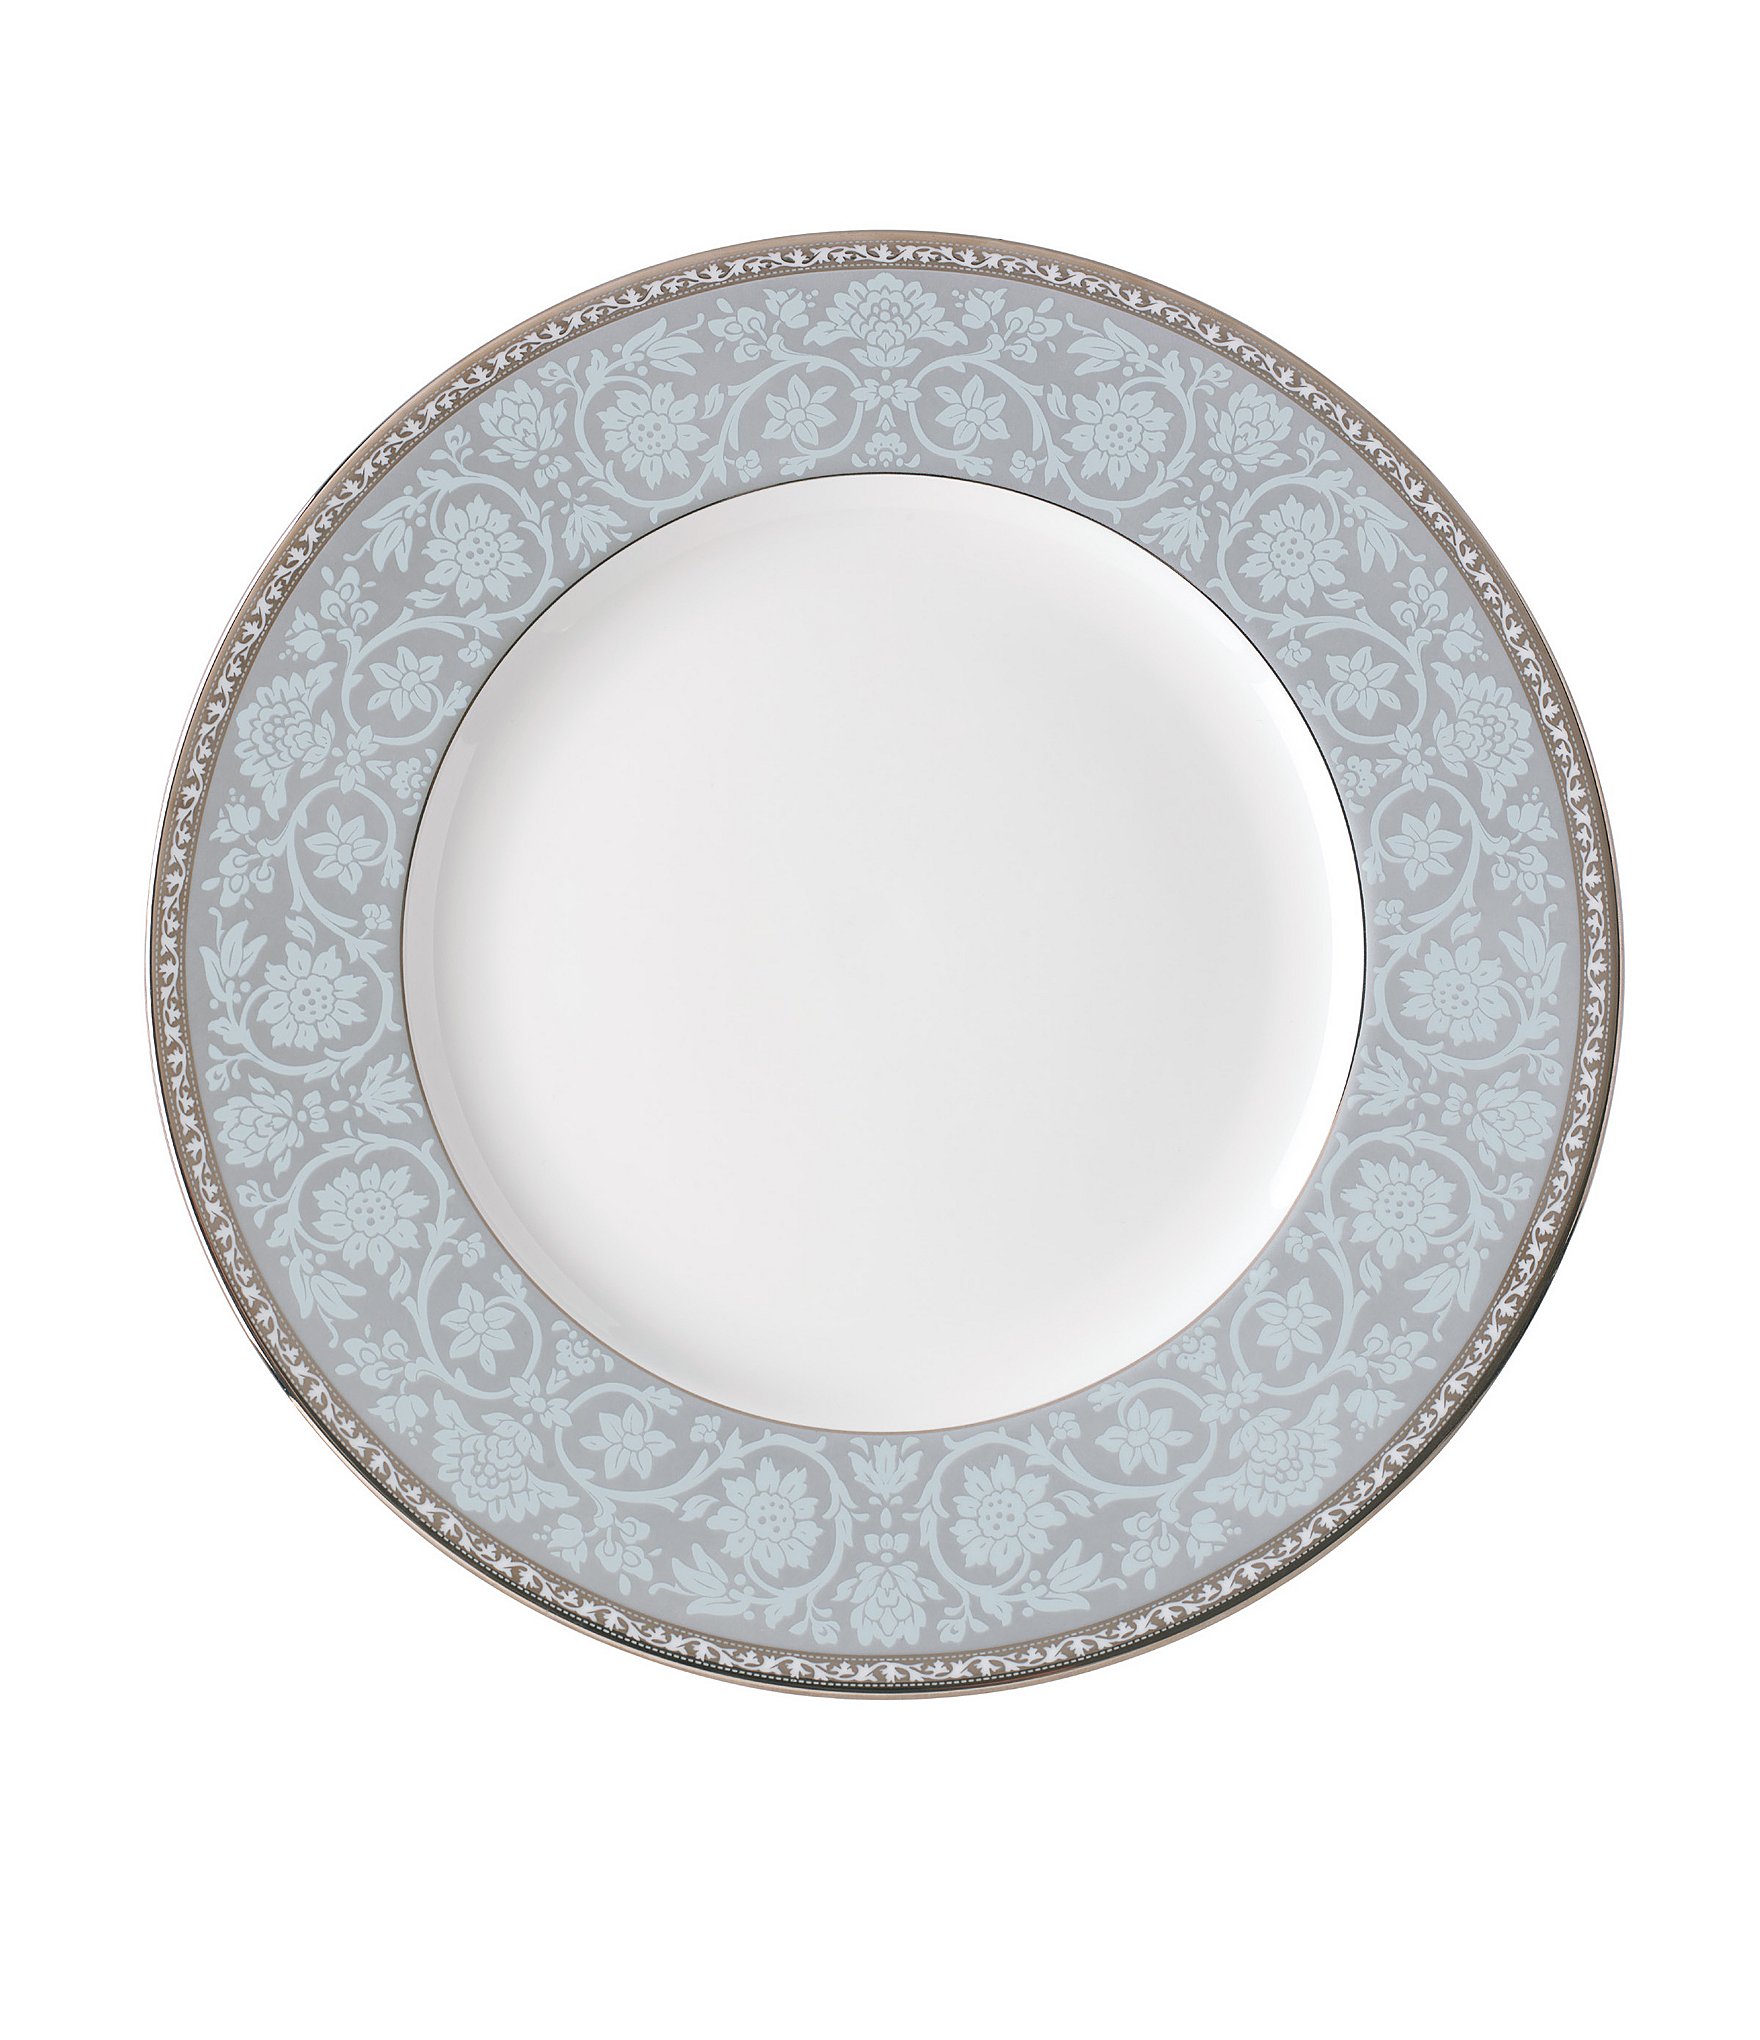 Тарелка обеденная фарфор. Посуда тарелки Ленокс. Тарелка обеденная фарфор 23см белый. Фарфор Ленокс. Ленокс тарелки authentic.